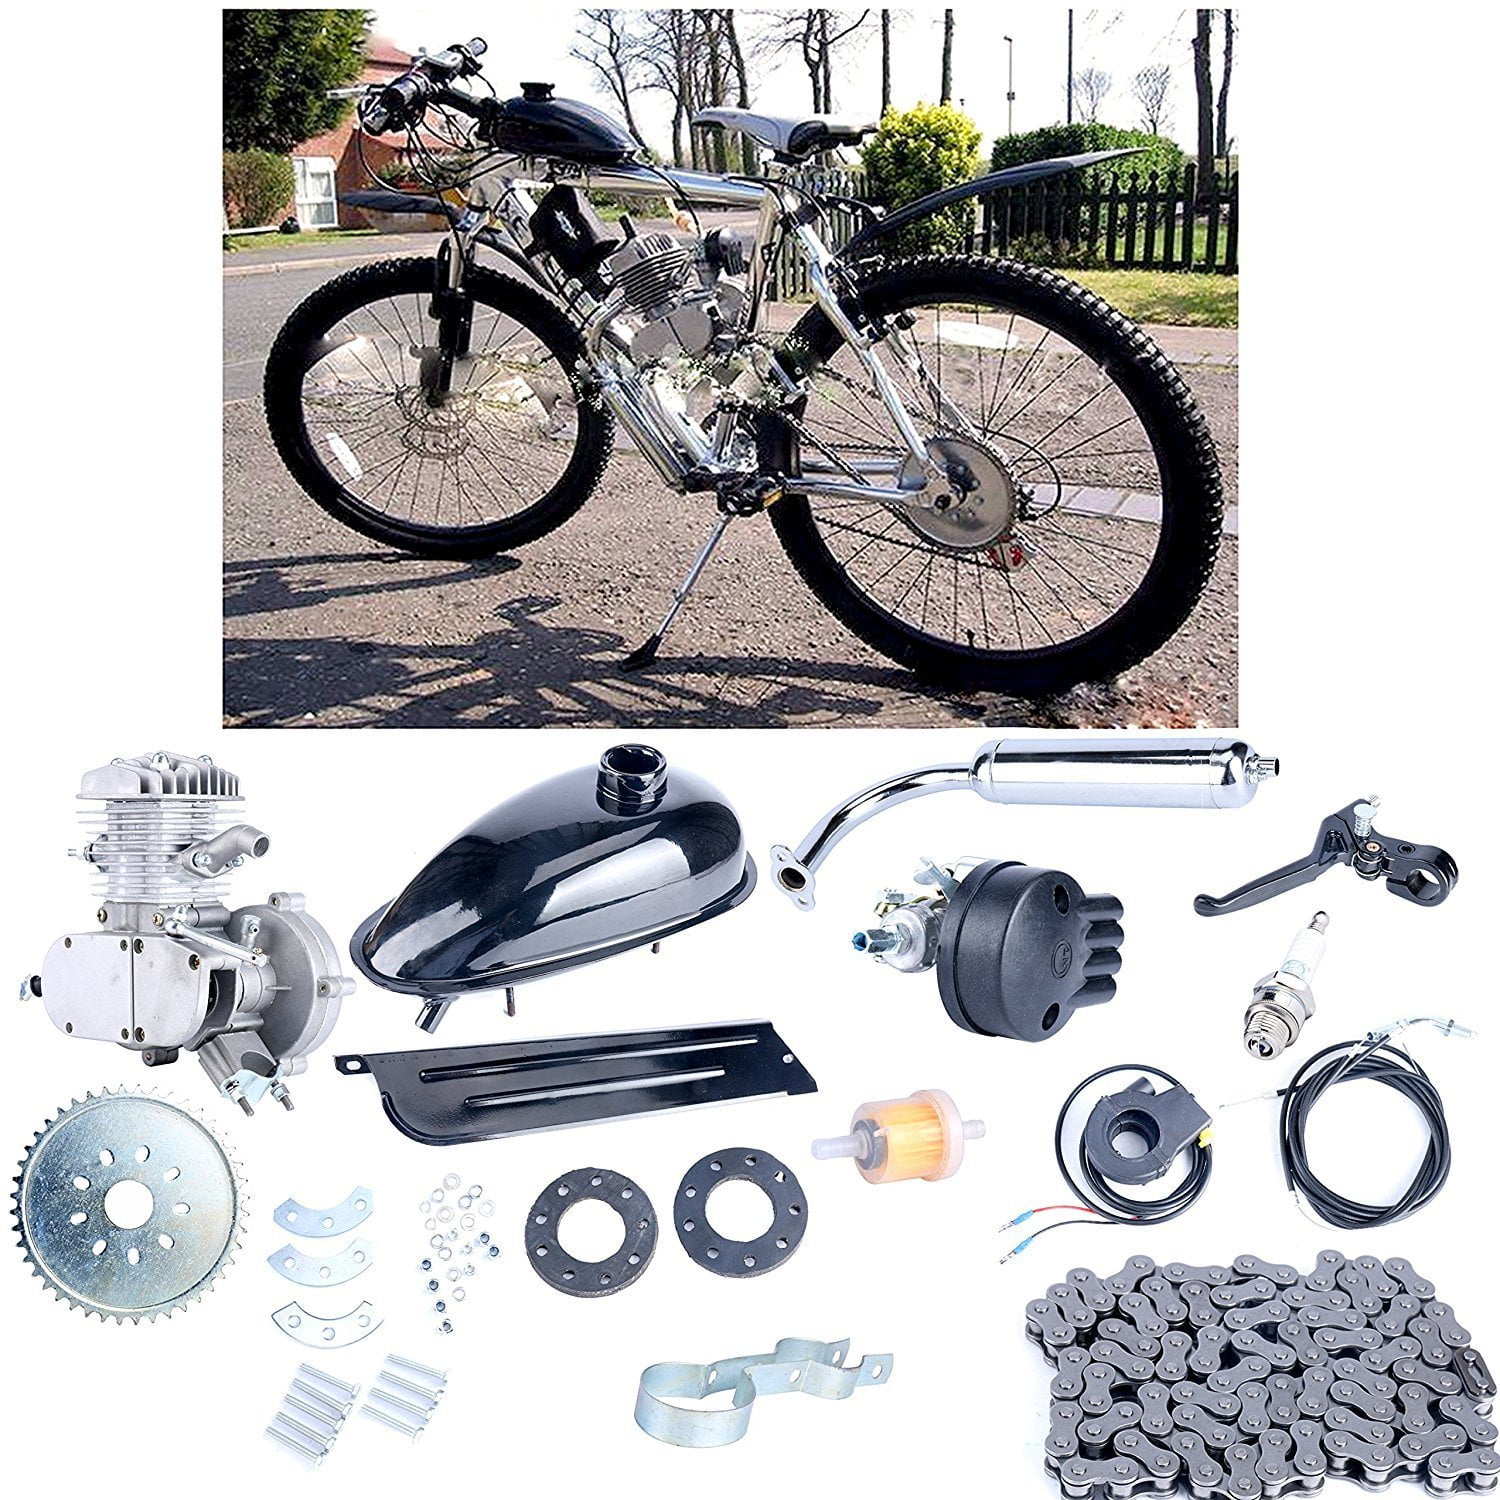 clutch cable 80cc 50cc Motorized GAS ENGINE bike parts 